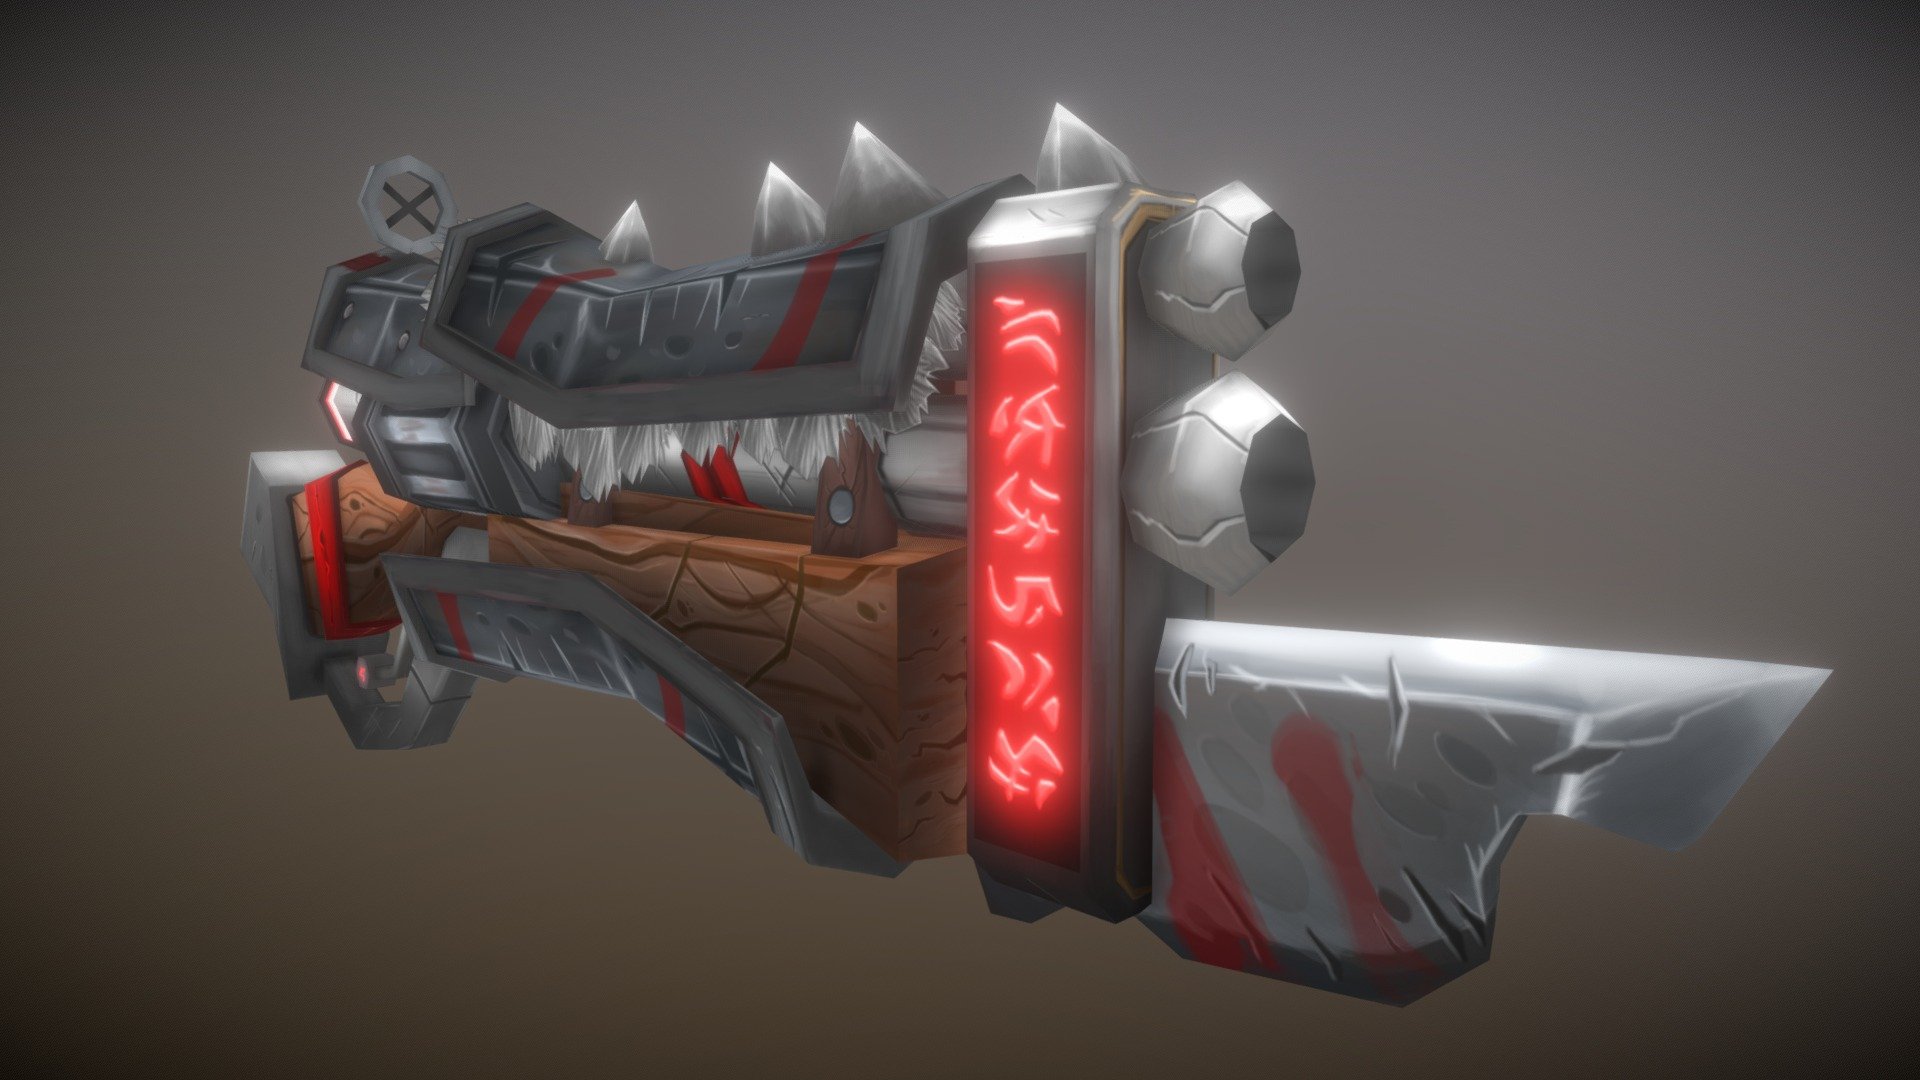 Issa gun - WoW Inspired Weapon : Chaos Gun - 3D model by darioromita 3d model